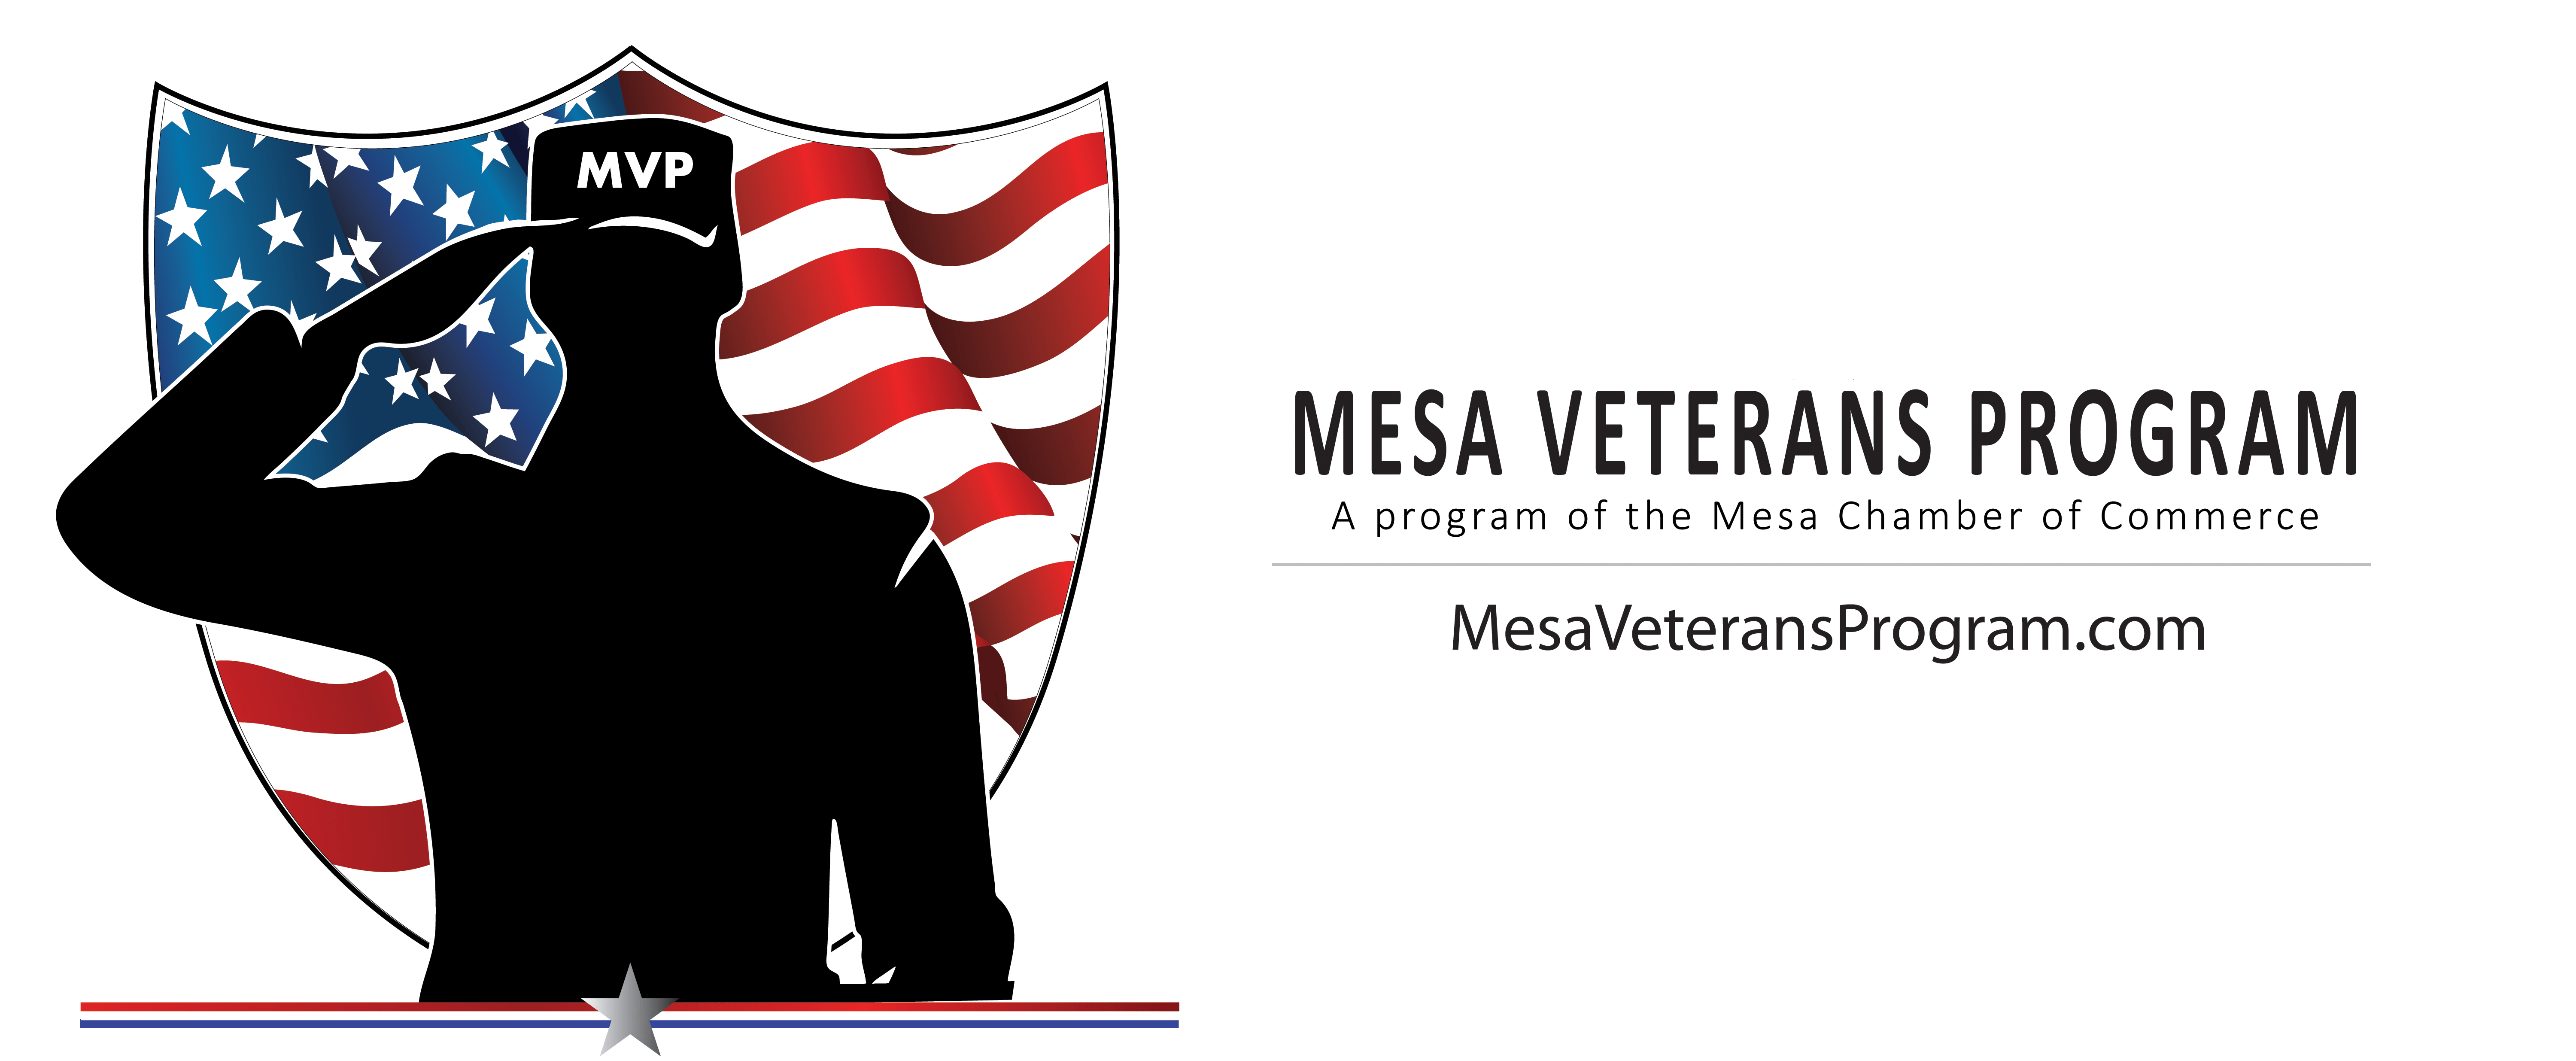 Veterans Logo - About Veterans Program